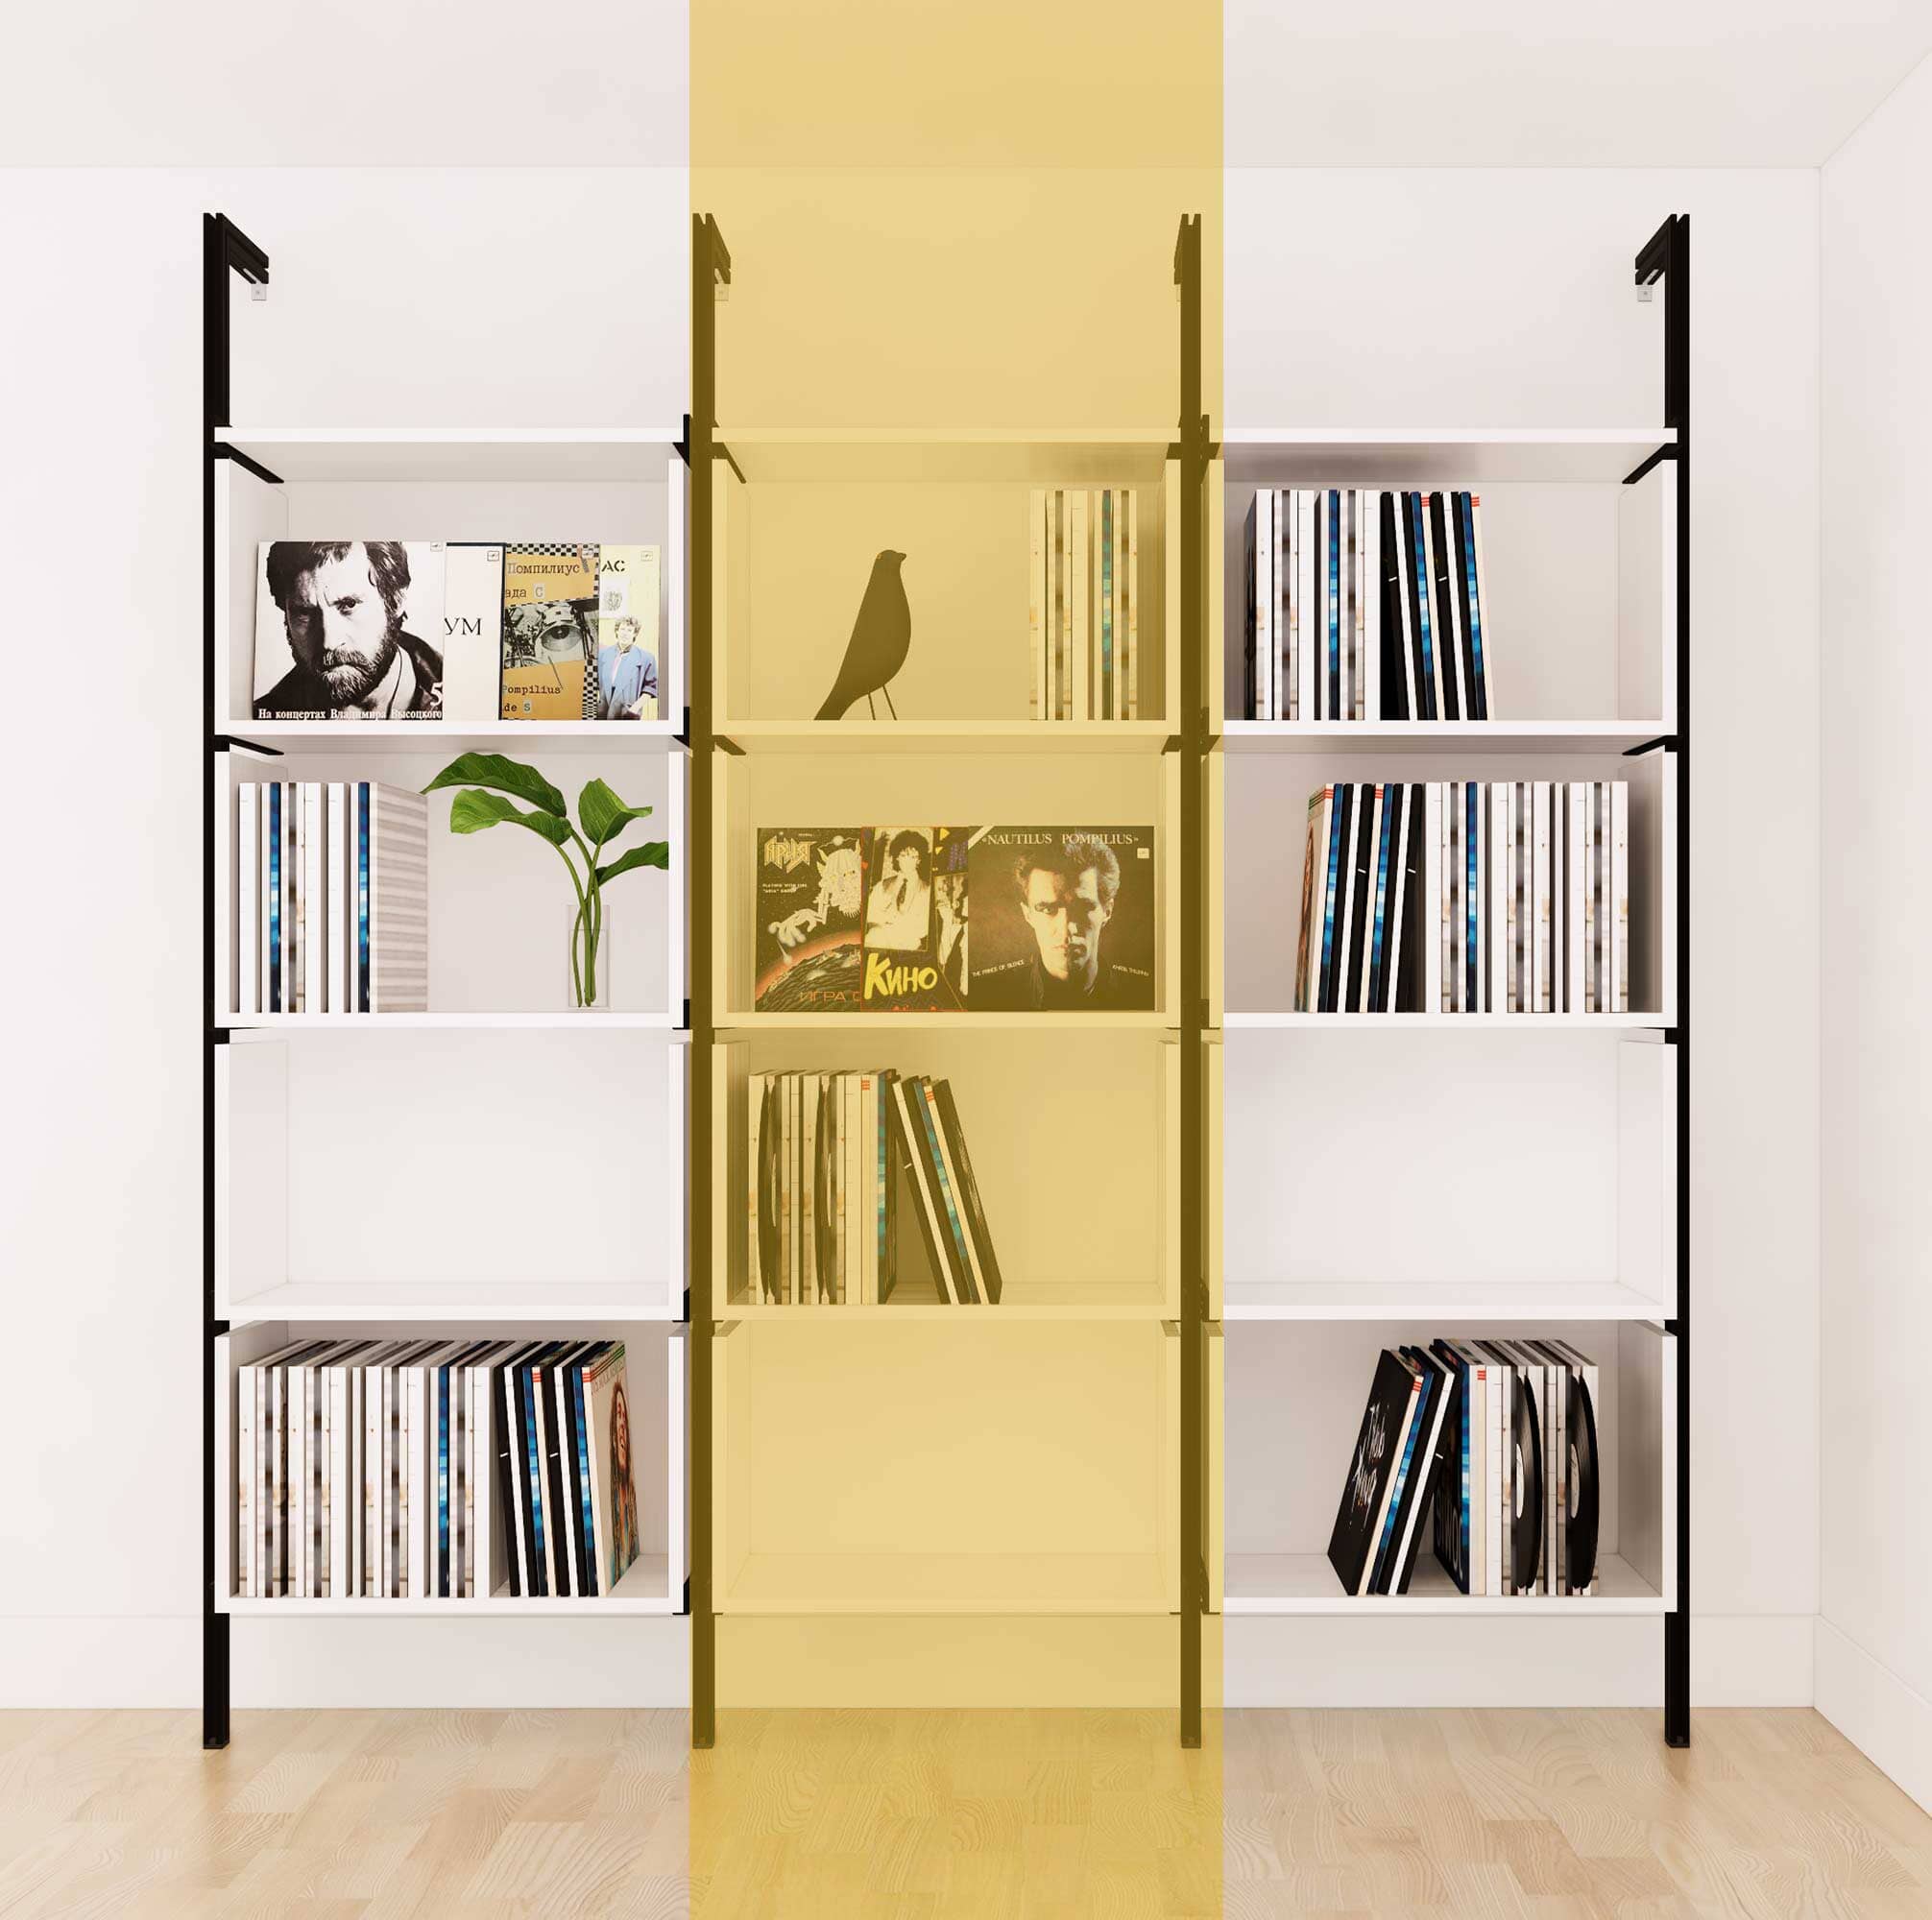 Vinyl Storage Series - Organize LP's in Style